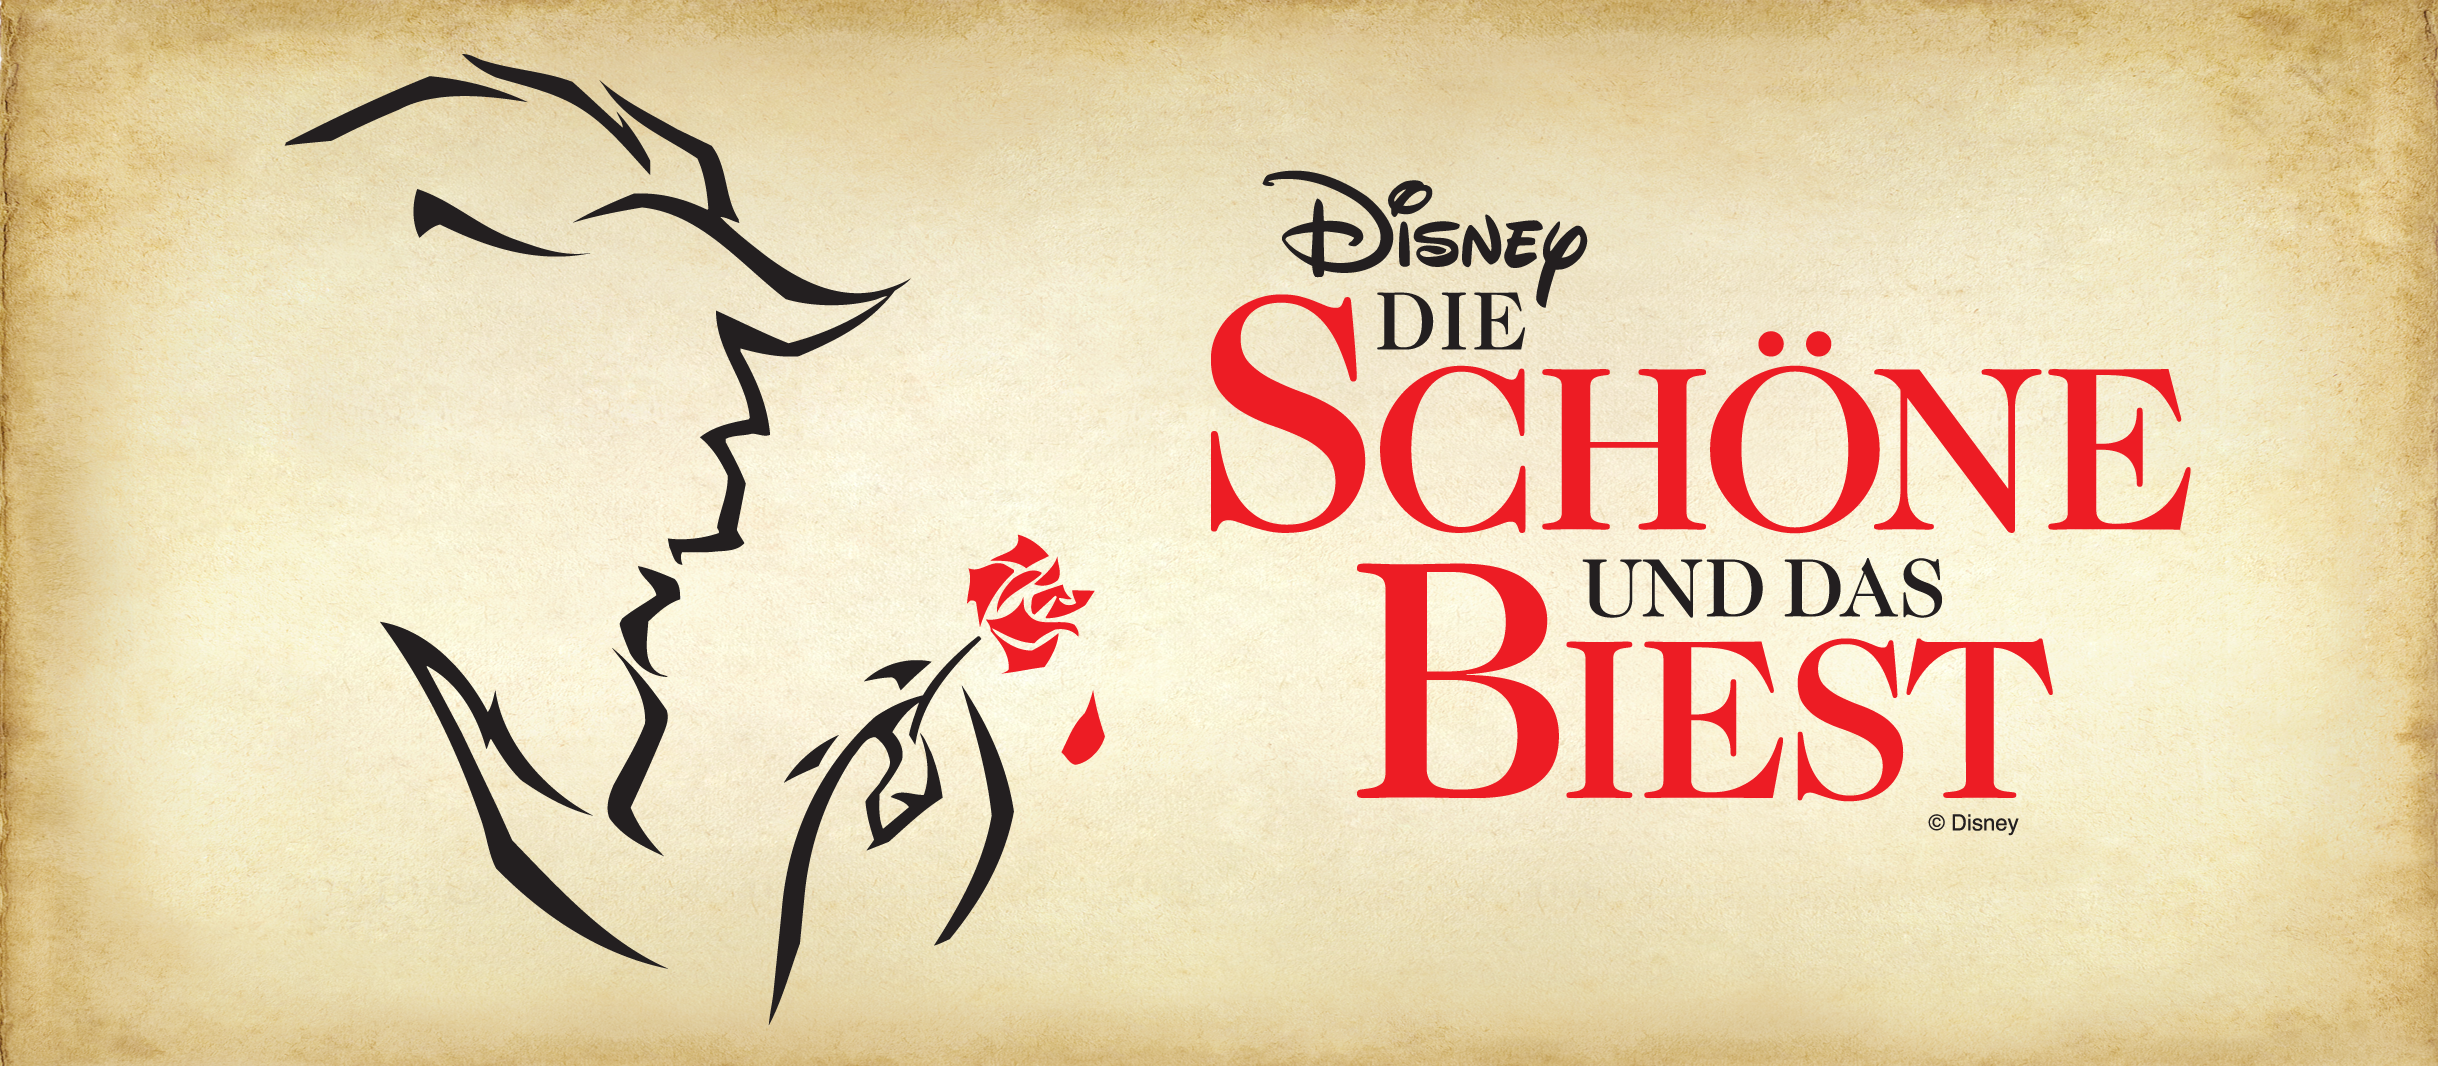 Plakatmotiv zum Musical Disney DIe Schöne und das Biest: Umriss eines Biestes mit einer roten rote in der Pfote